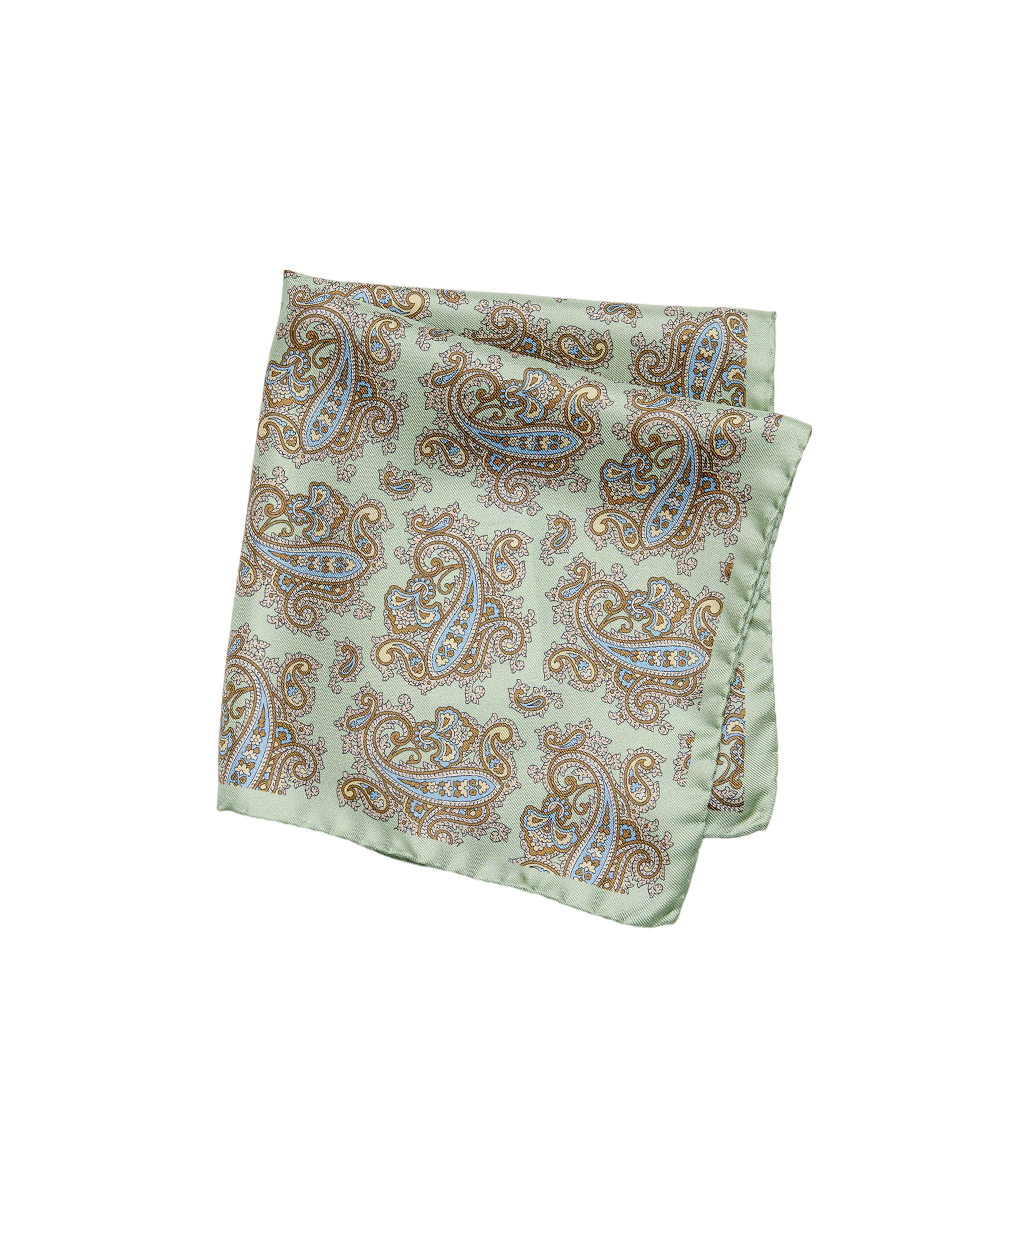 Halványzöld paisley mintás selyem díszzsebkendő